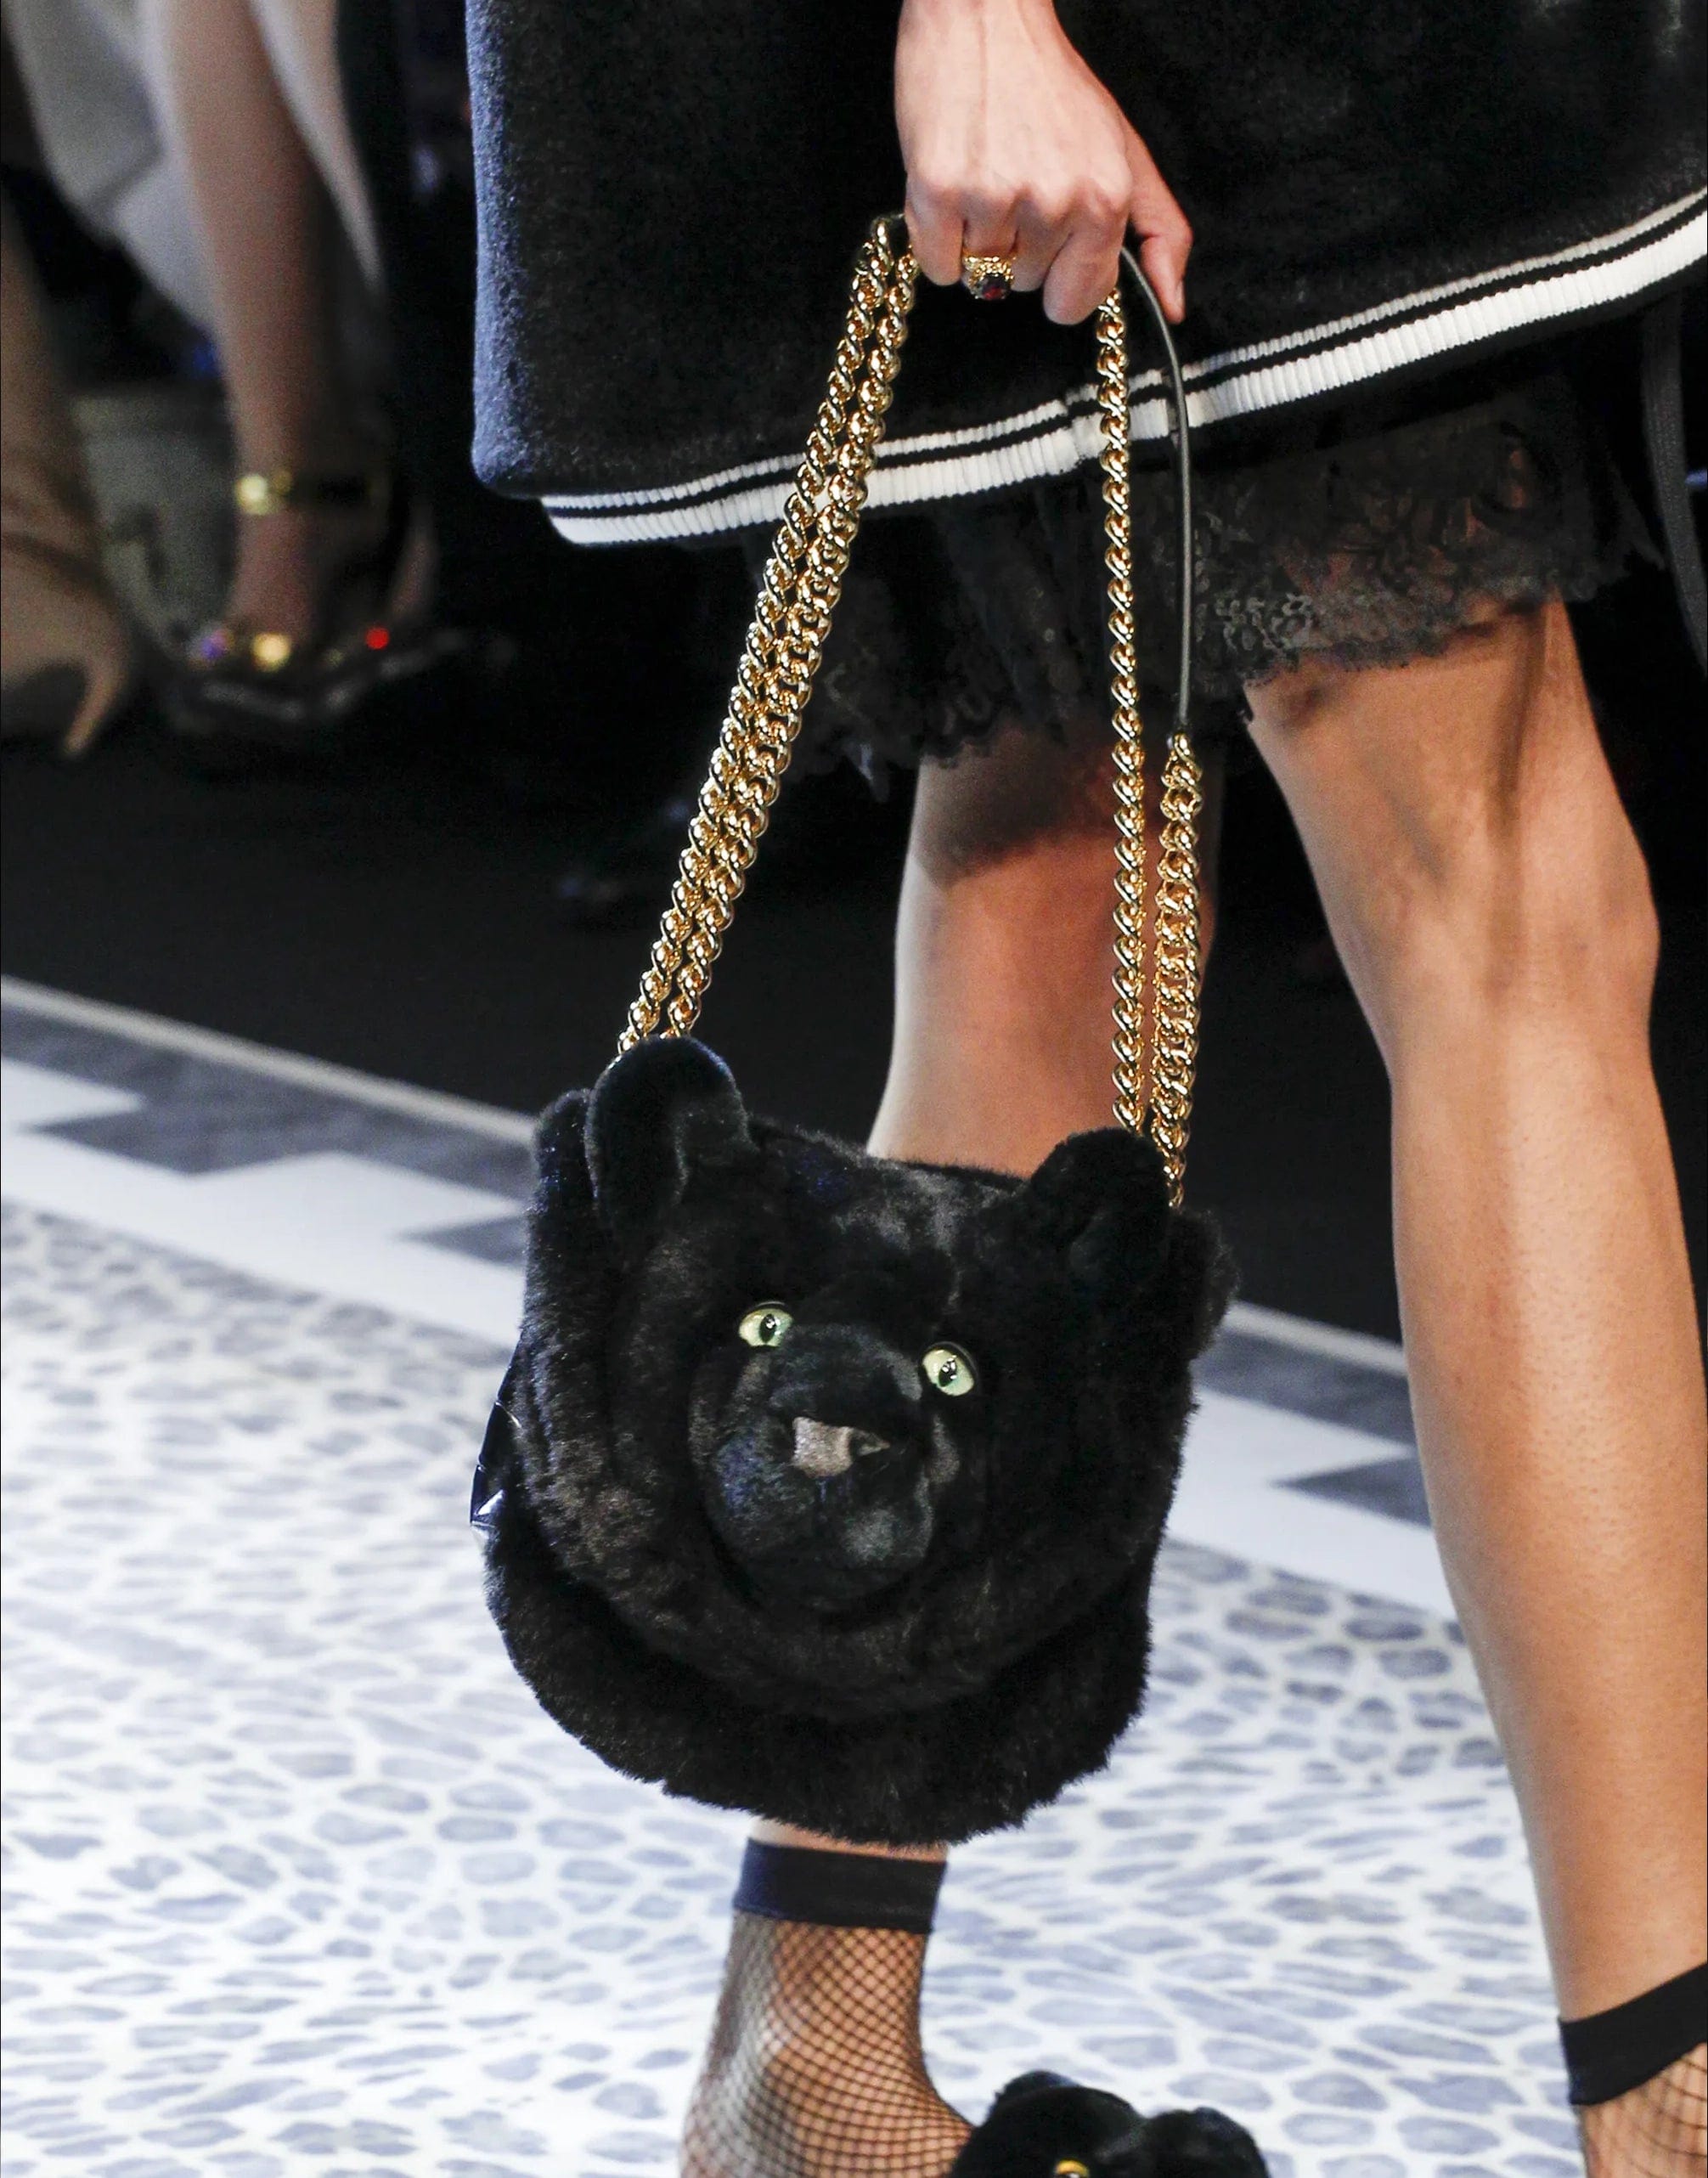 Dolce & Gabbana DG Millennials Panther Face Shoulder Bag